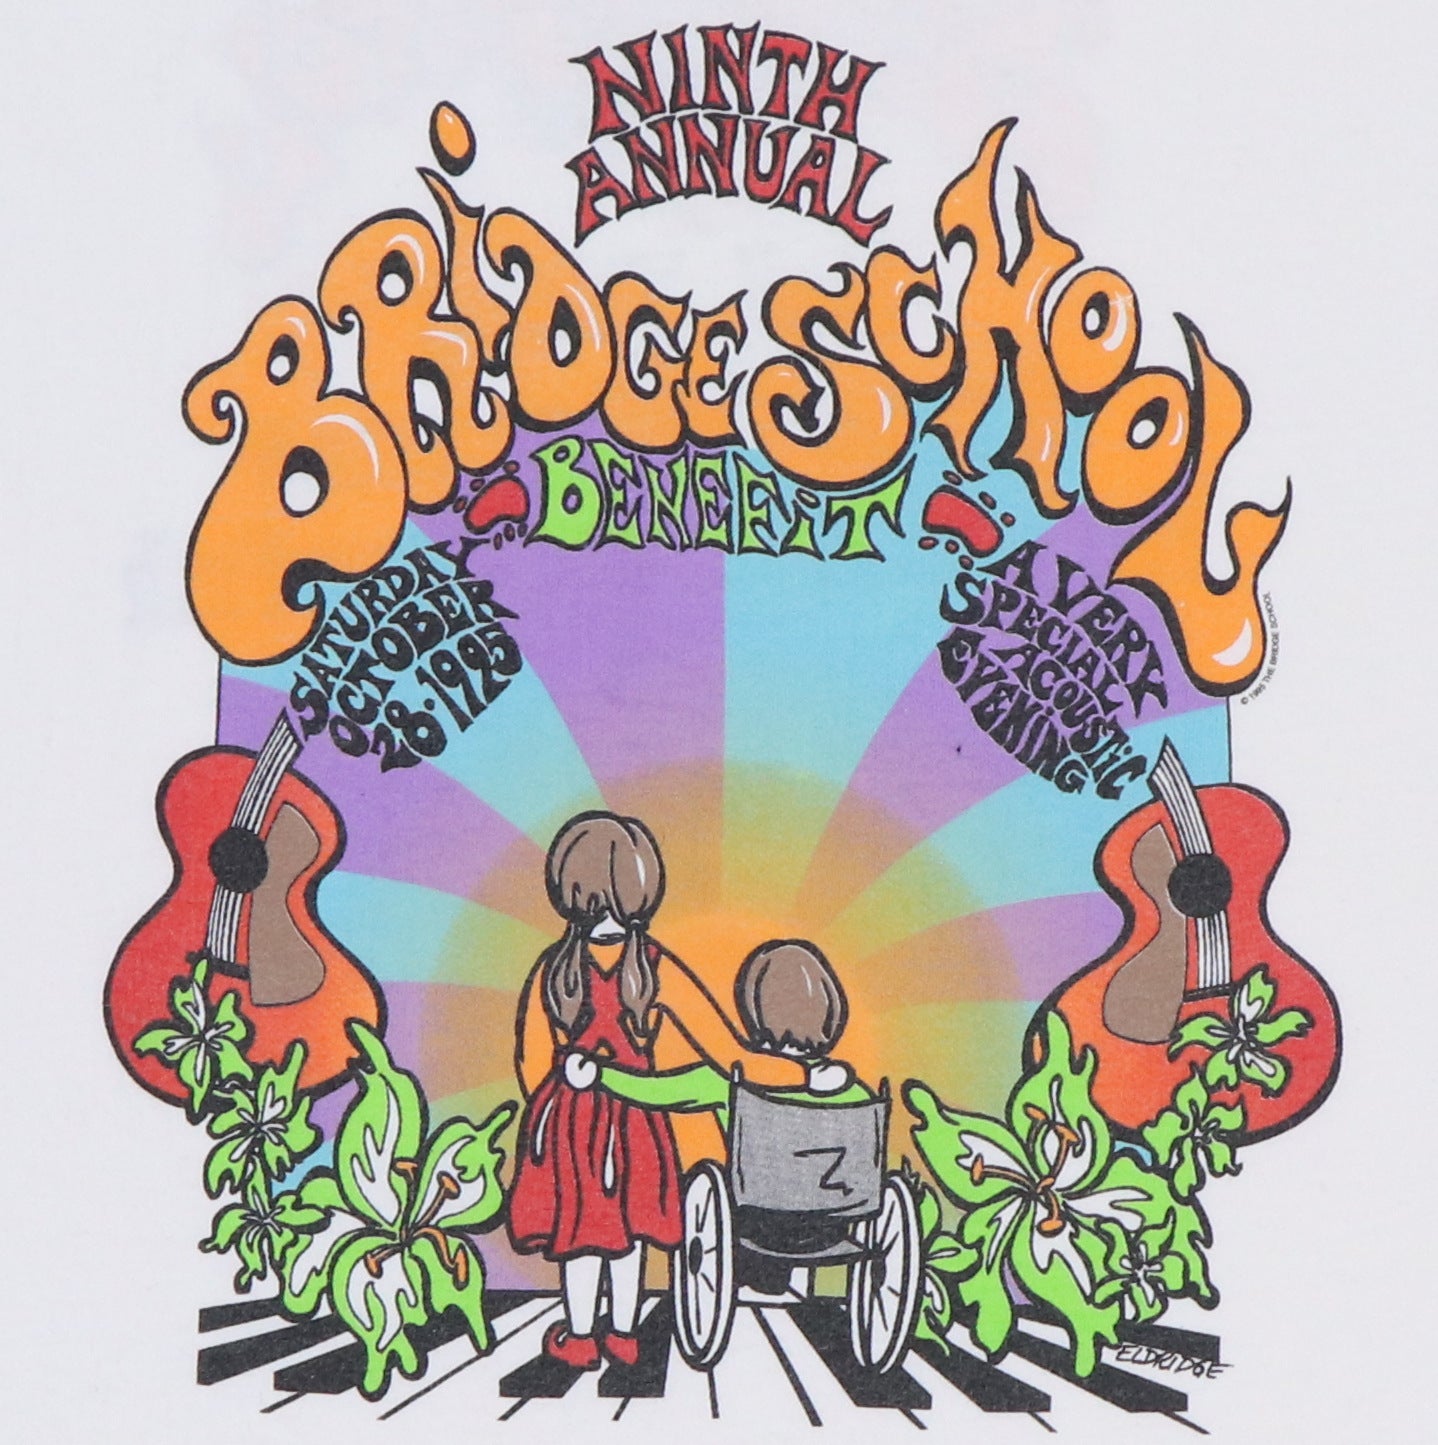 1995 Bridge School Benefit Concert Shirt